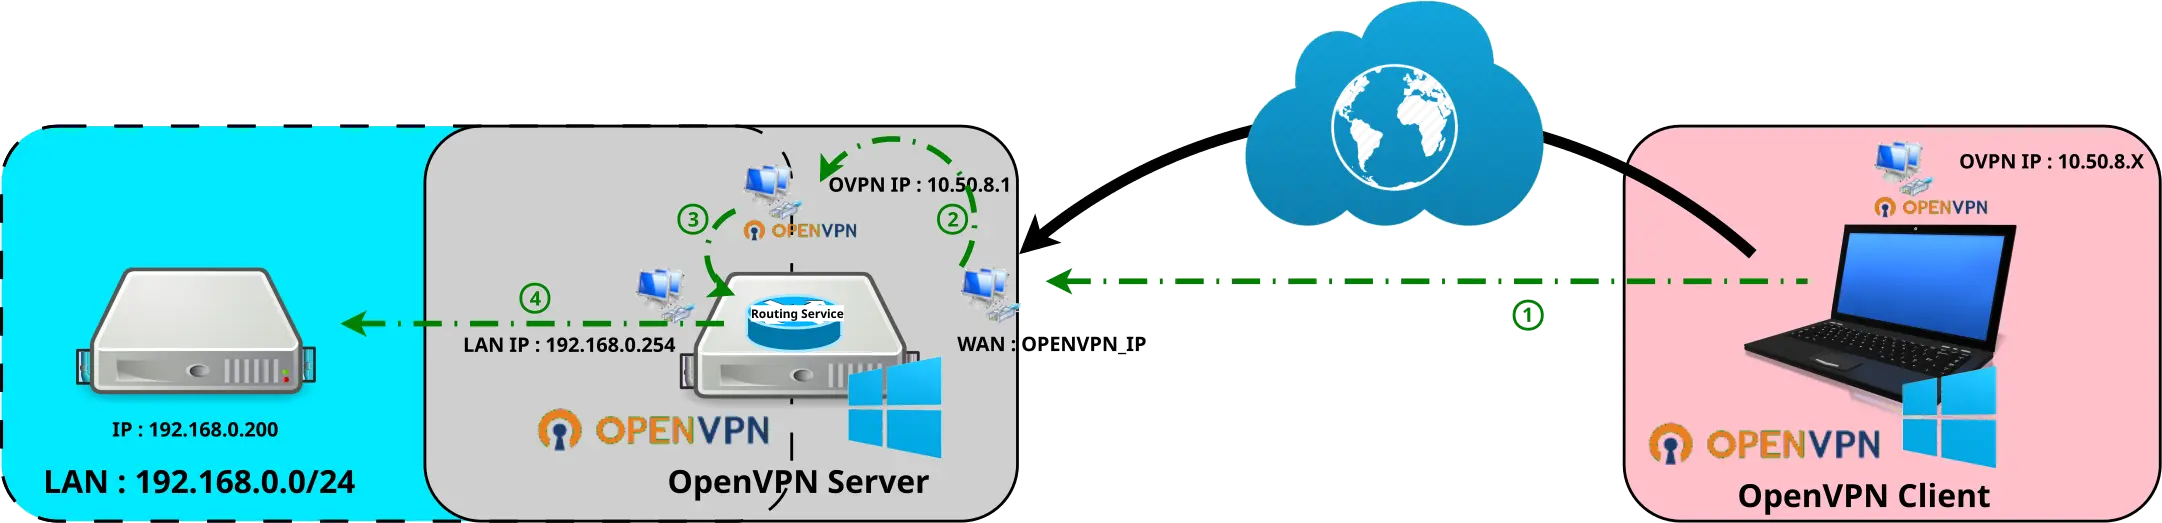 Schéma Windows OpenVPN with routing Network Scheme